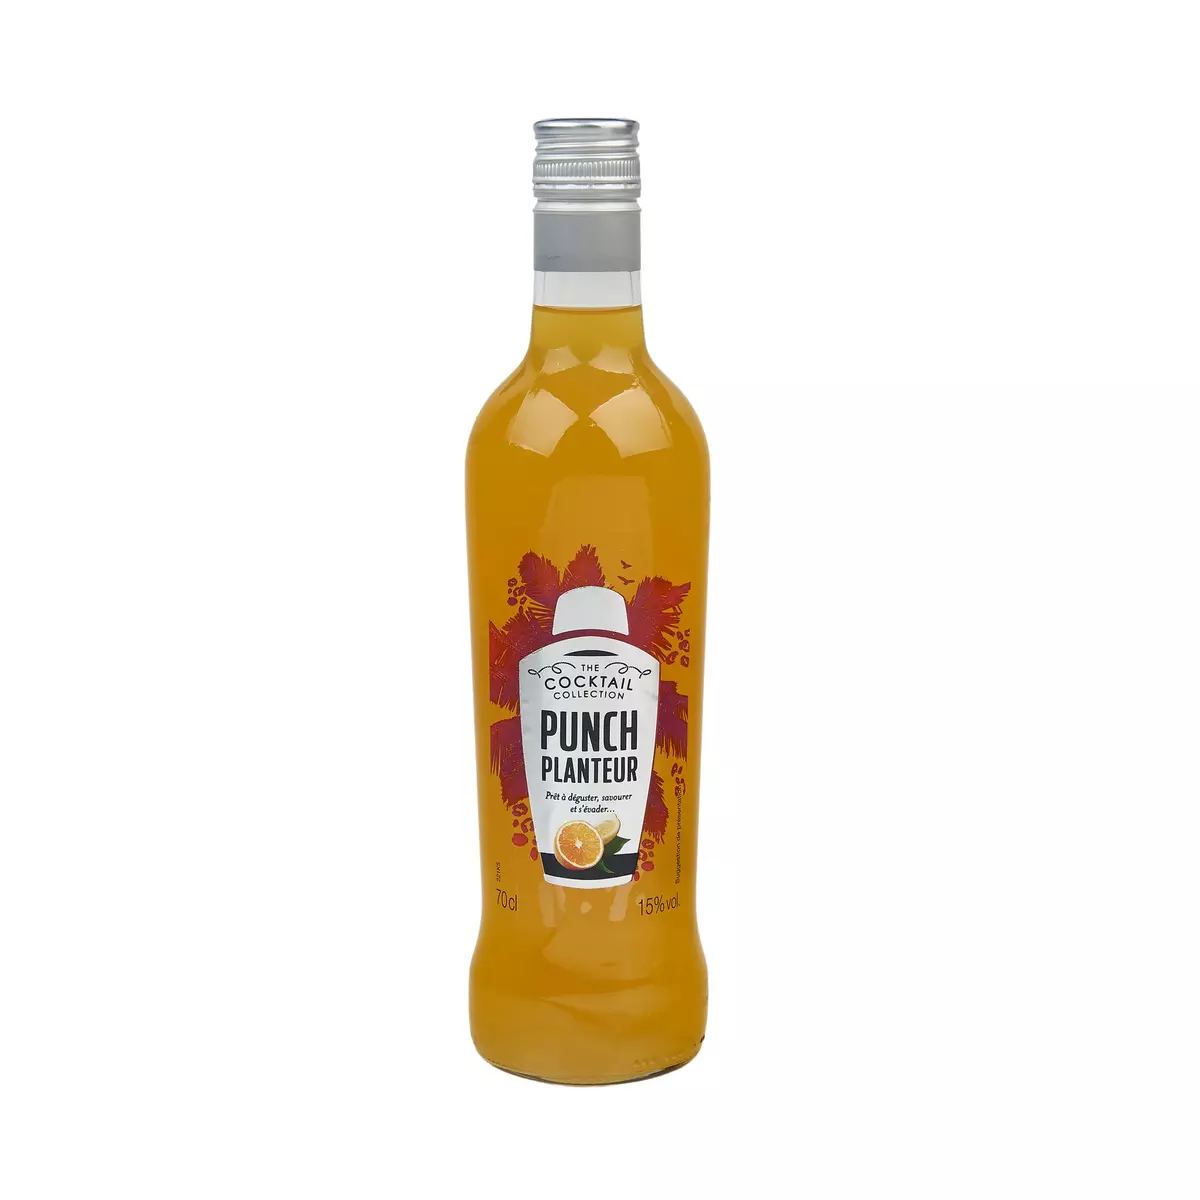 AUCHAN Punch planteur orange Cocktail collection prêt à déguster 15% 70cl